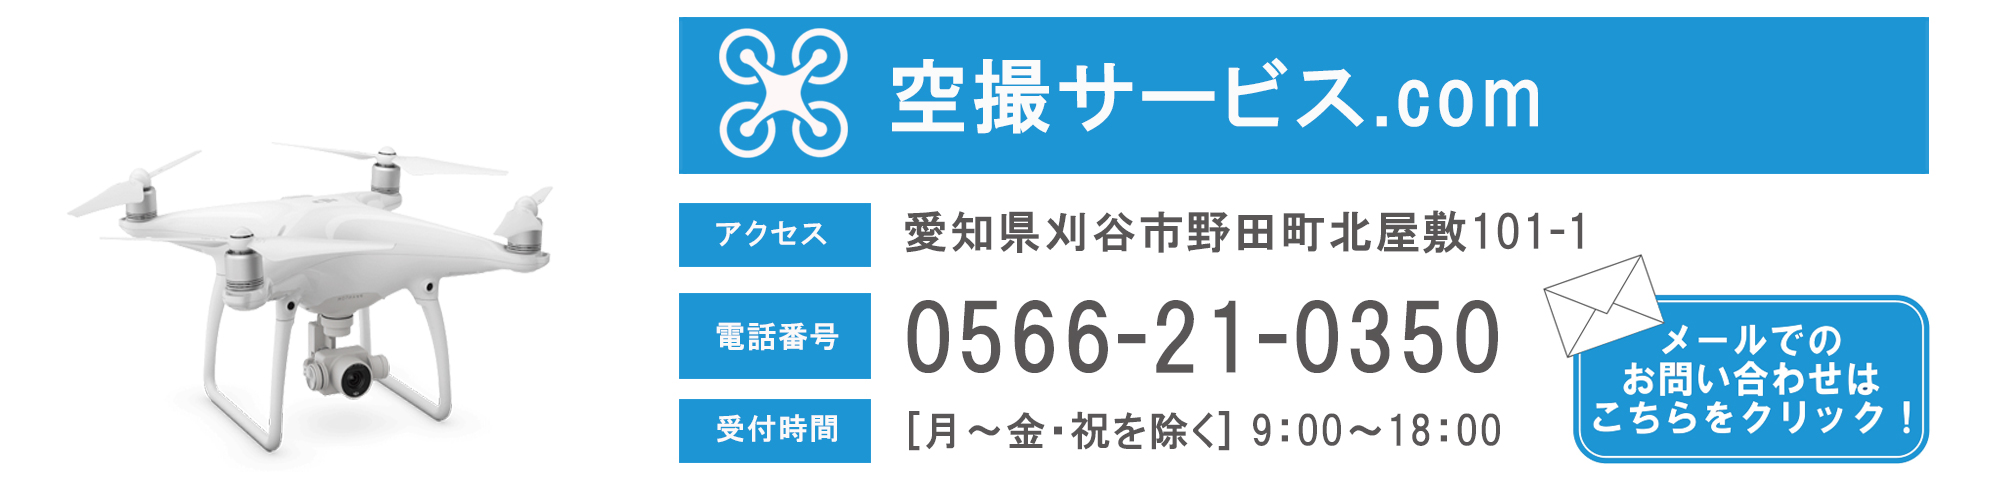 松阪市内で、切盛土の土量算出や土量計算をご検討中なら、ドローン測量を用いた弊社にお問合せ下さい。